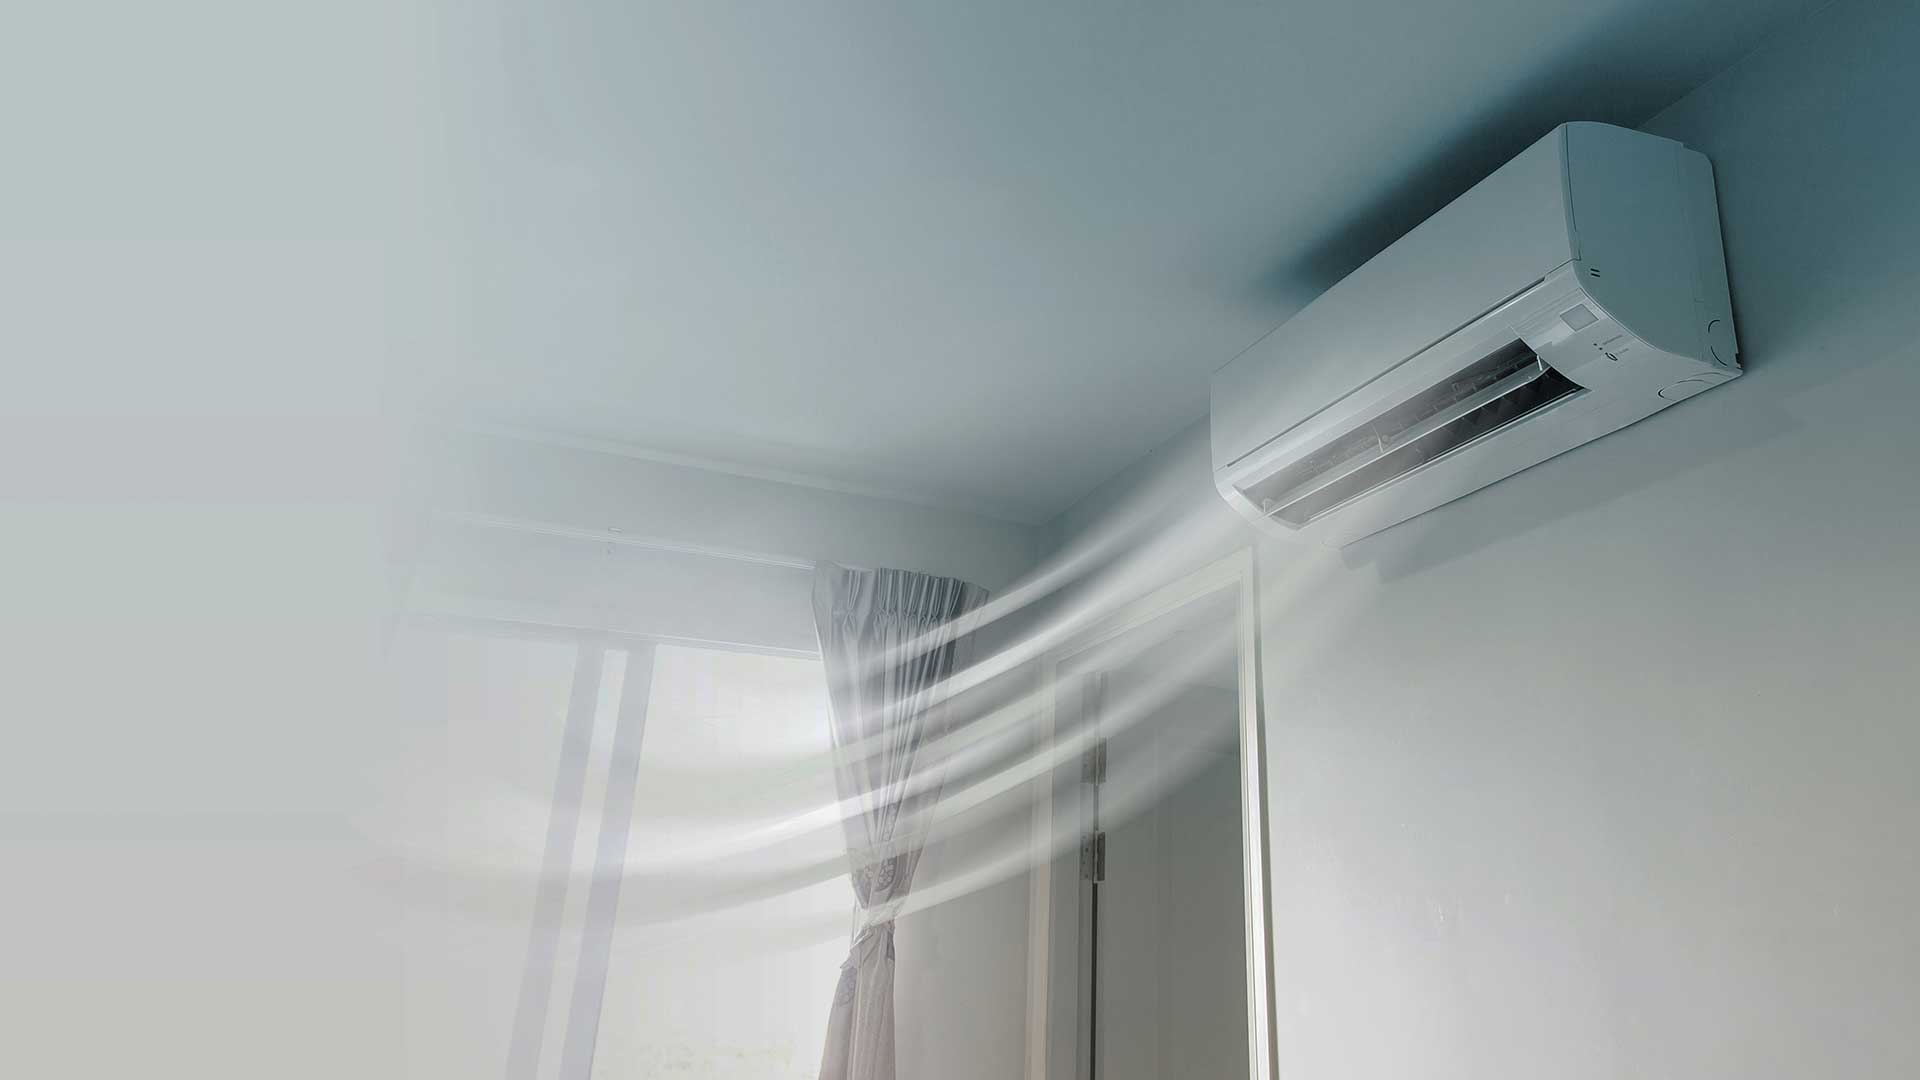 klimatyzator oddaje zimne powietrze do pomieszczenia -  w 2021